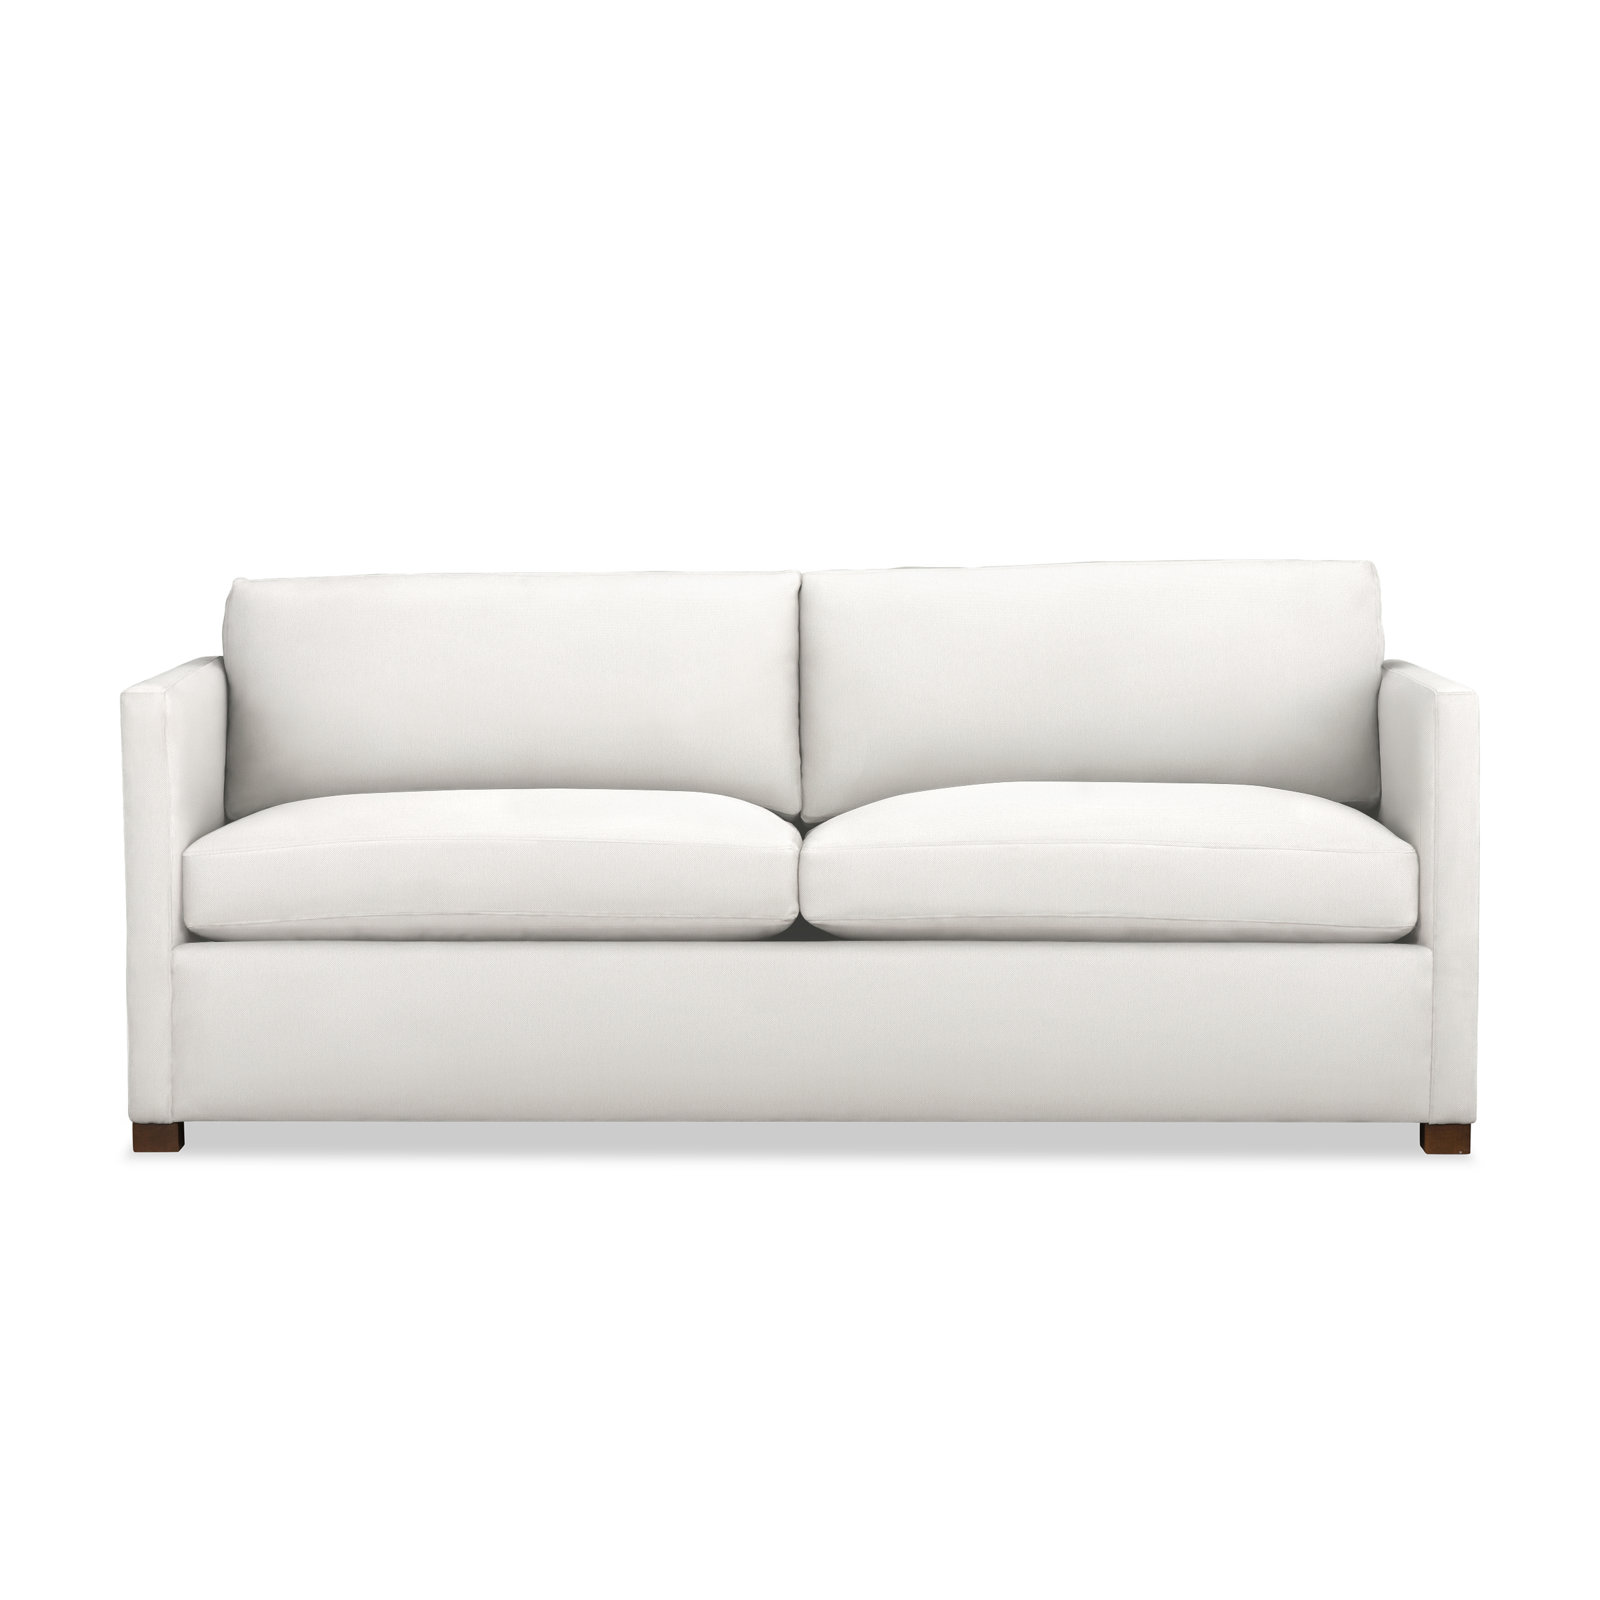 Joss & Main Daiquiri 87" Upholstered Sofa